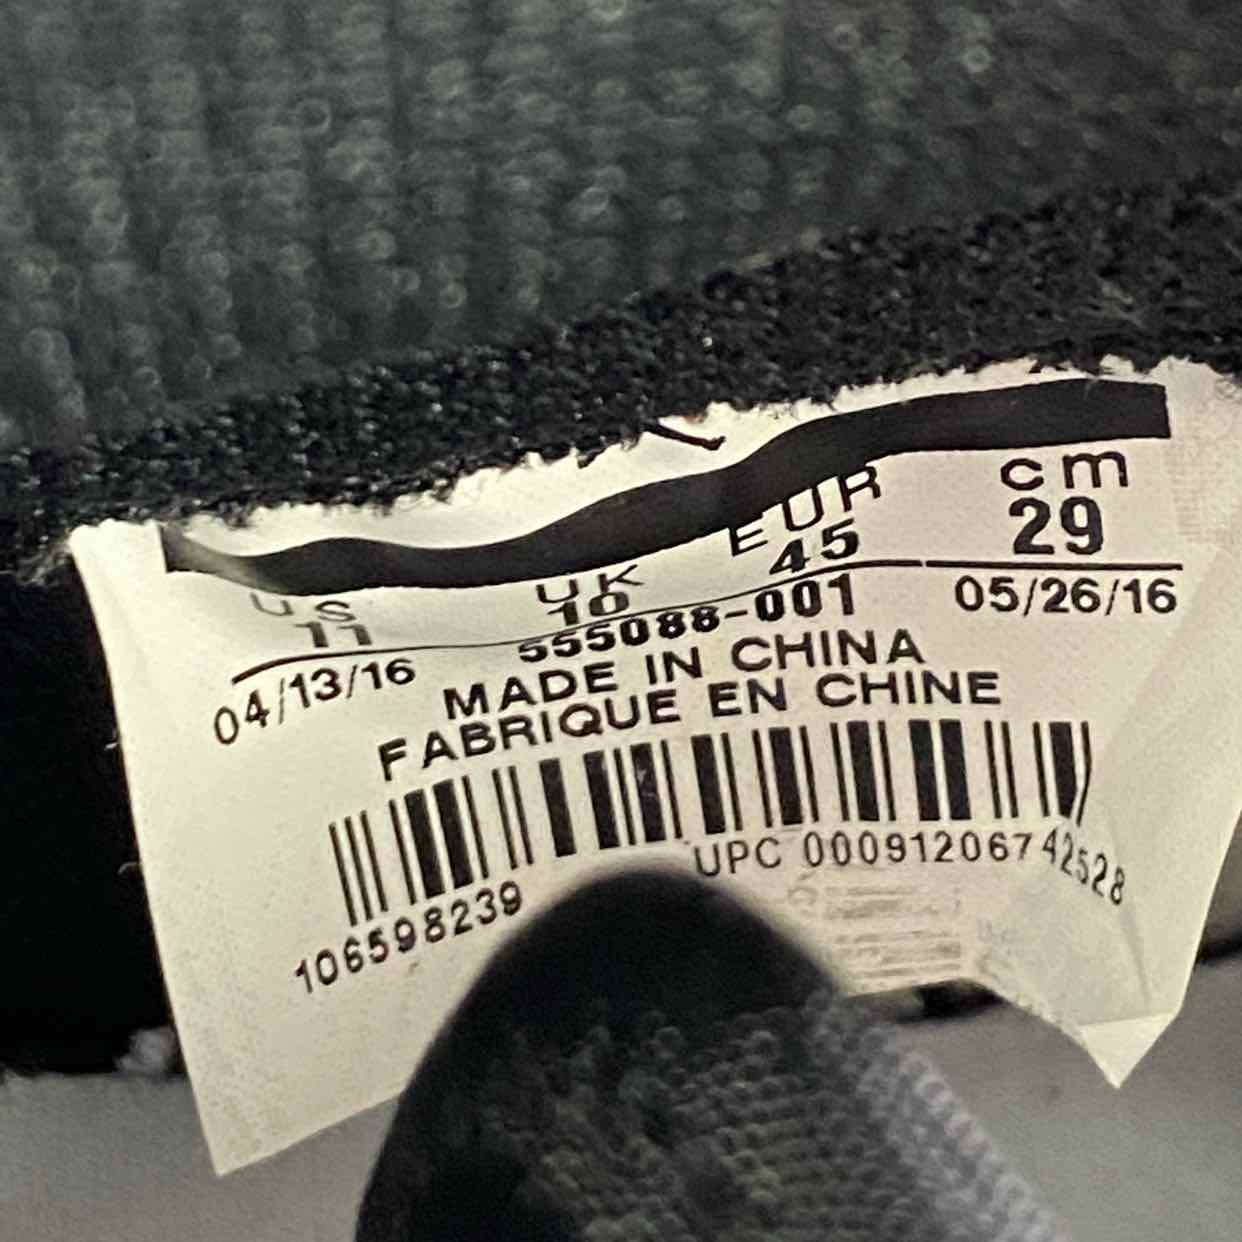 Air Jordan 1 Retro High OG "Banned" 2016 New Size 11